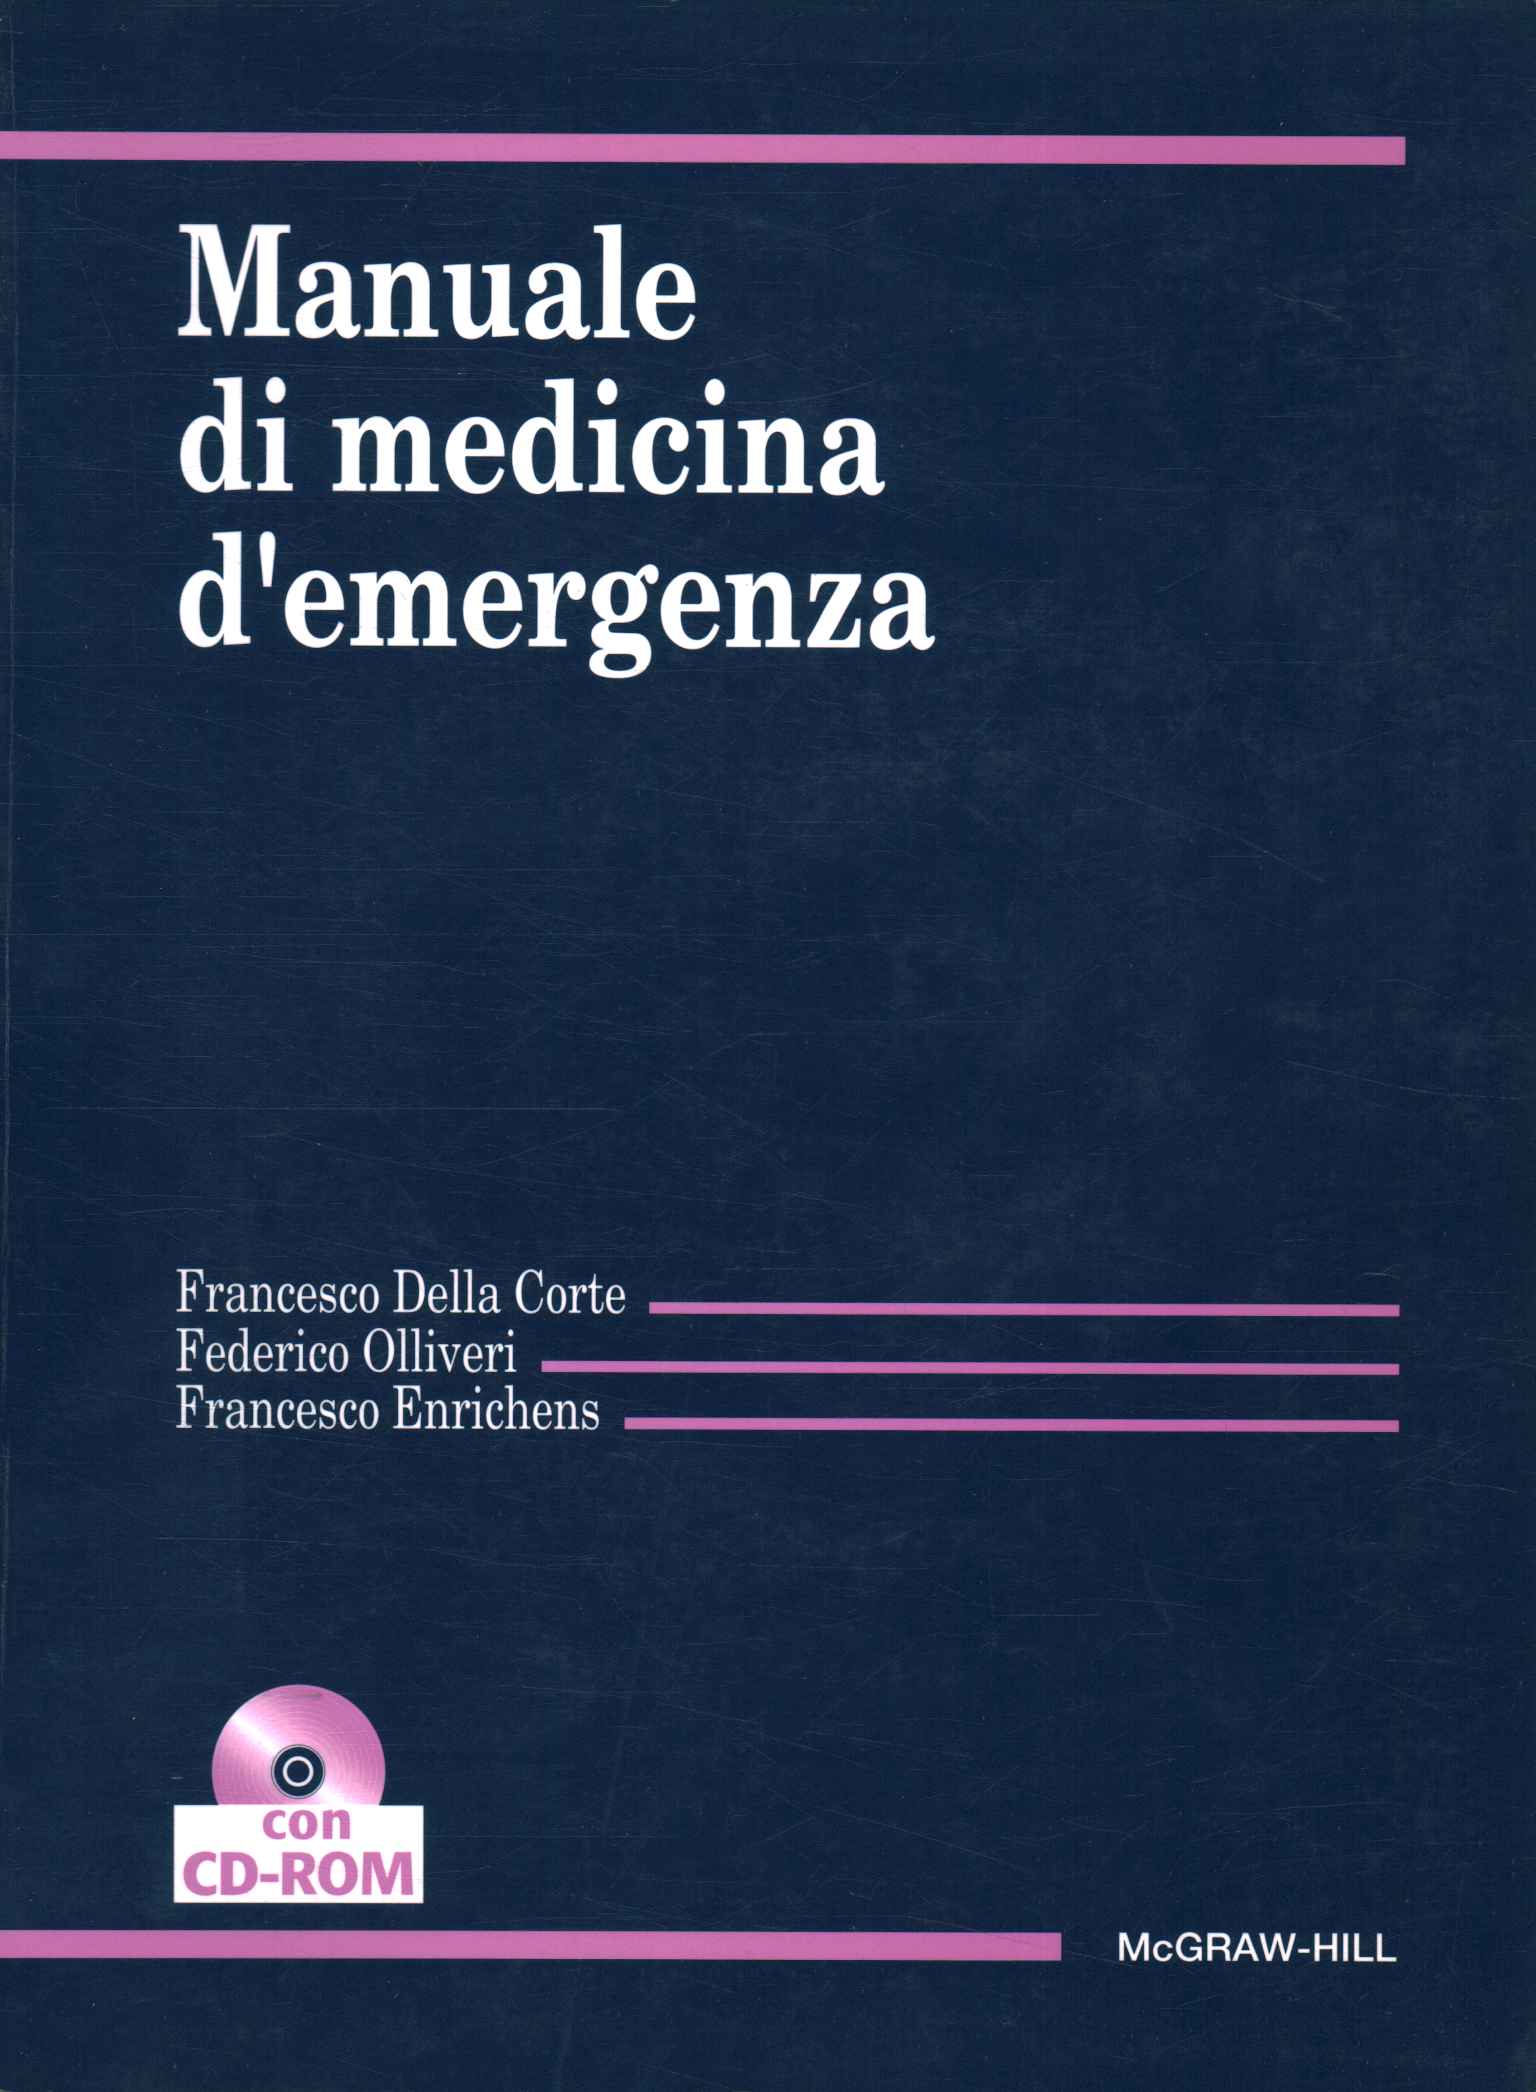 Manuale di medicina d'emergenza%2,Manuale di medicina d'emergenza%2,Manuale di medicina d'emergenza%2